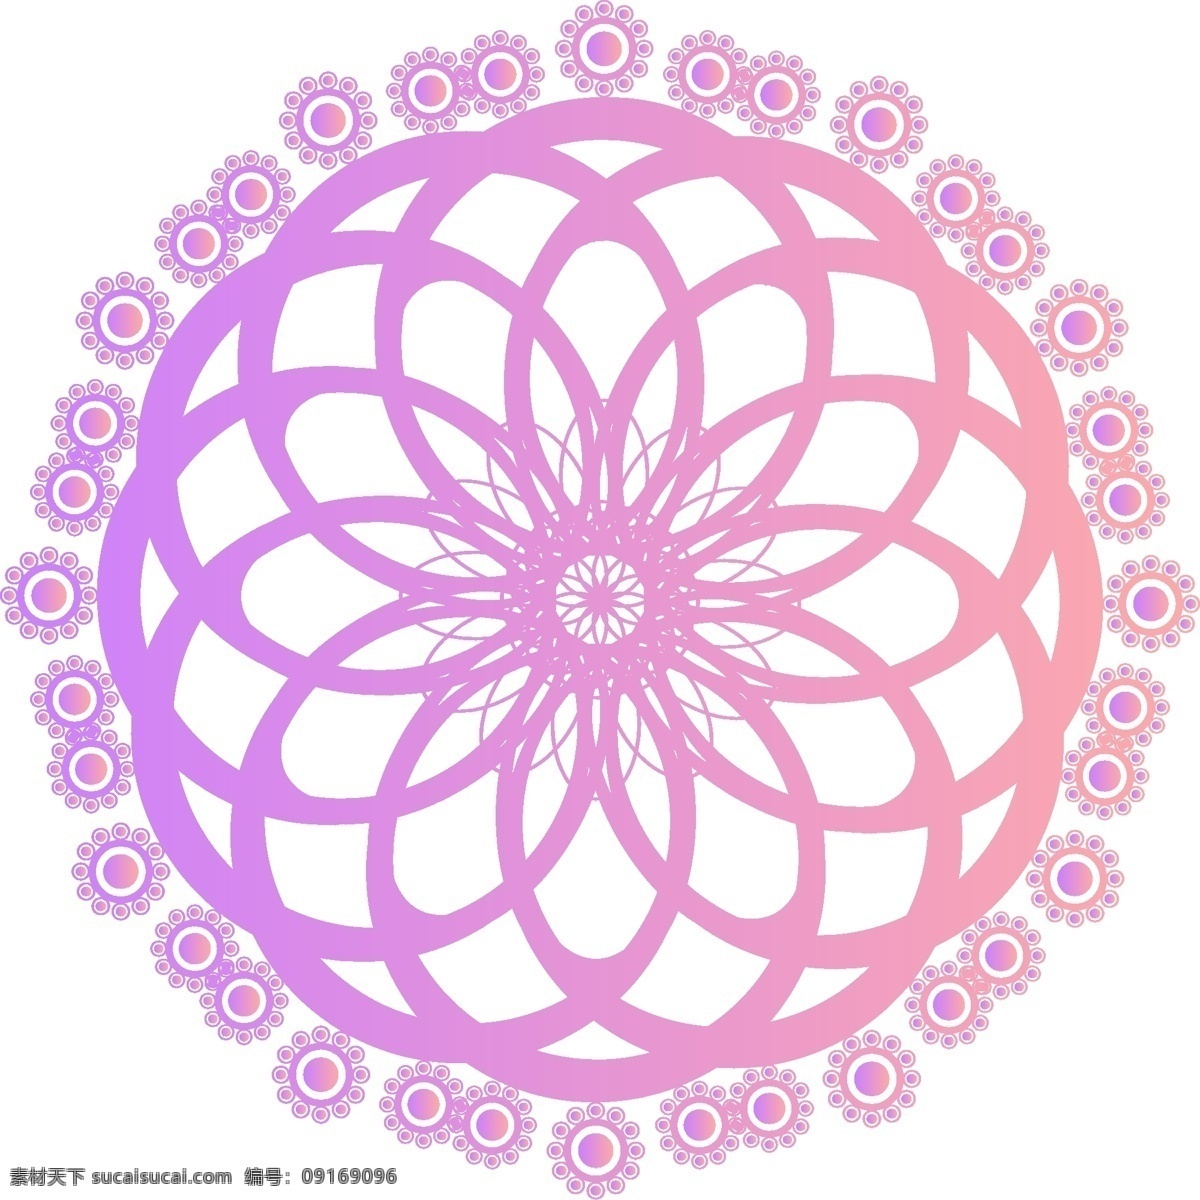 原创 矢量 几何 旋转 炫彩 渐变 万花筒 装饰 元素 紫色 花纹 粉色 设计元素 可商用